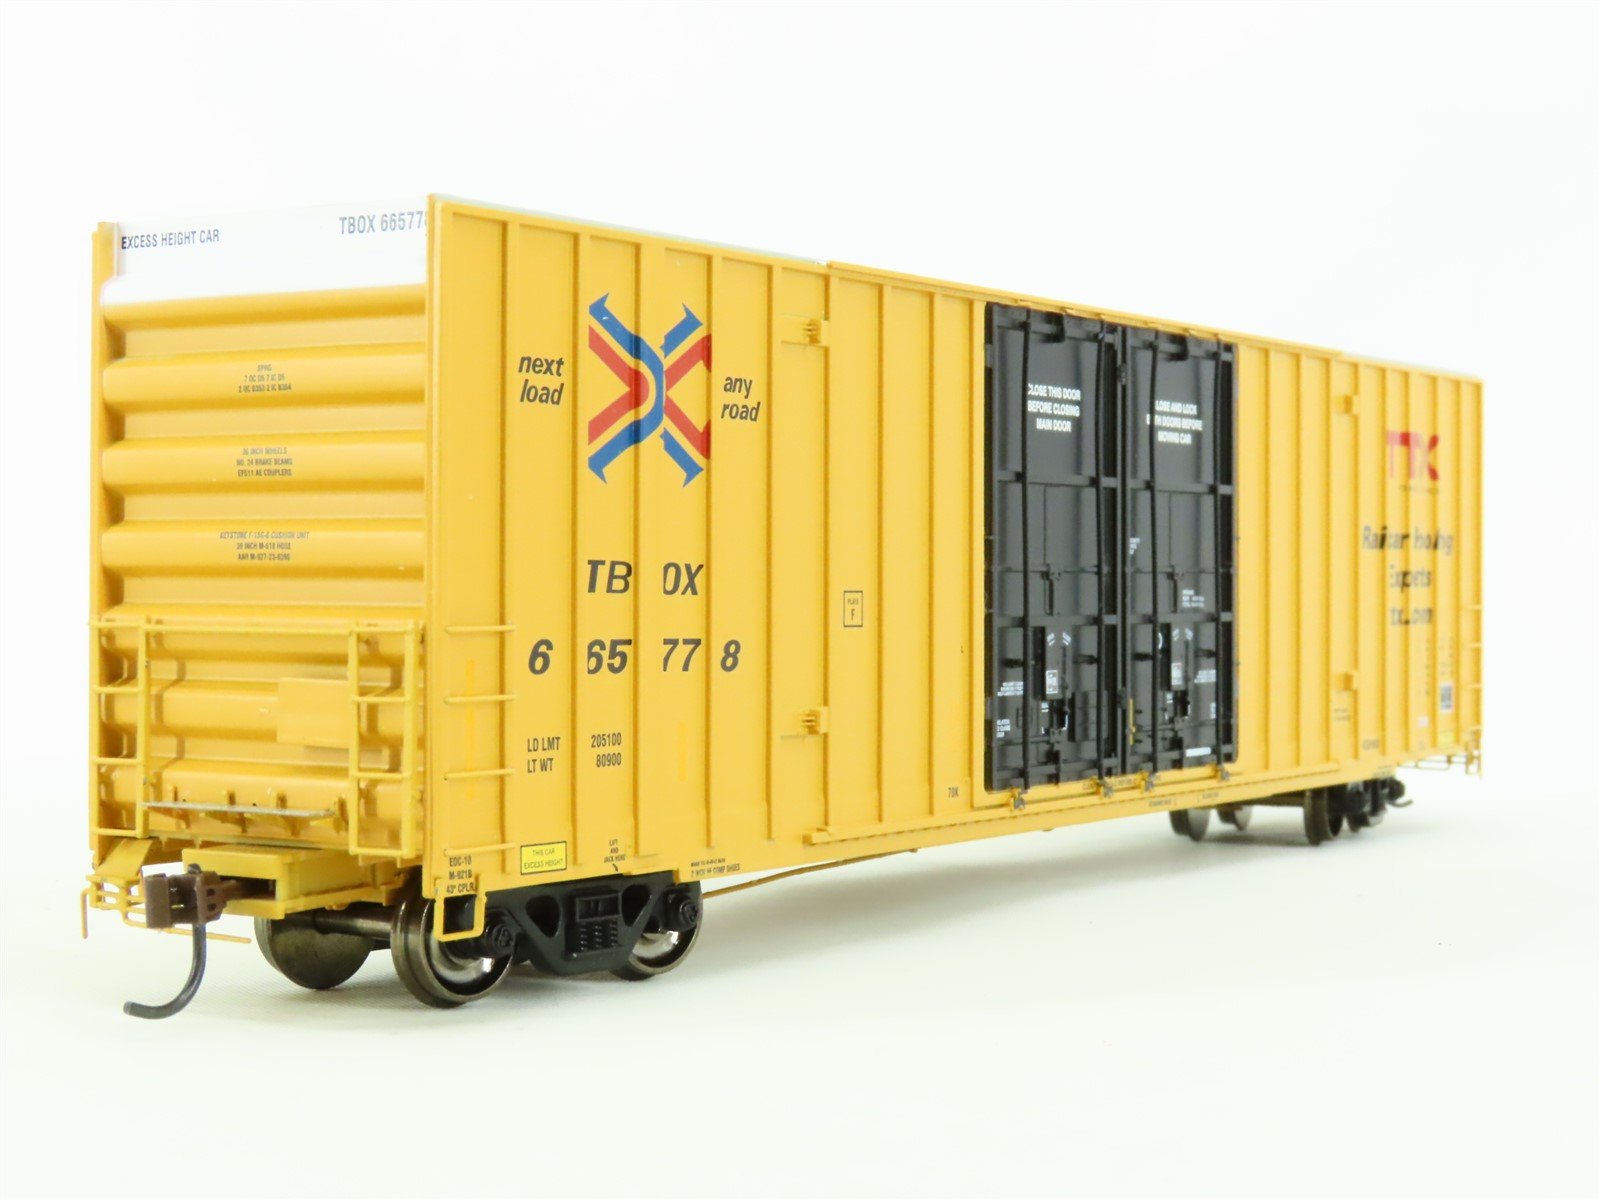 HO Scale Athearn 96298 TBOX Railbox 60' Gunderson Steel Box Car